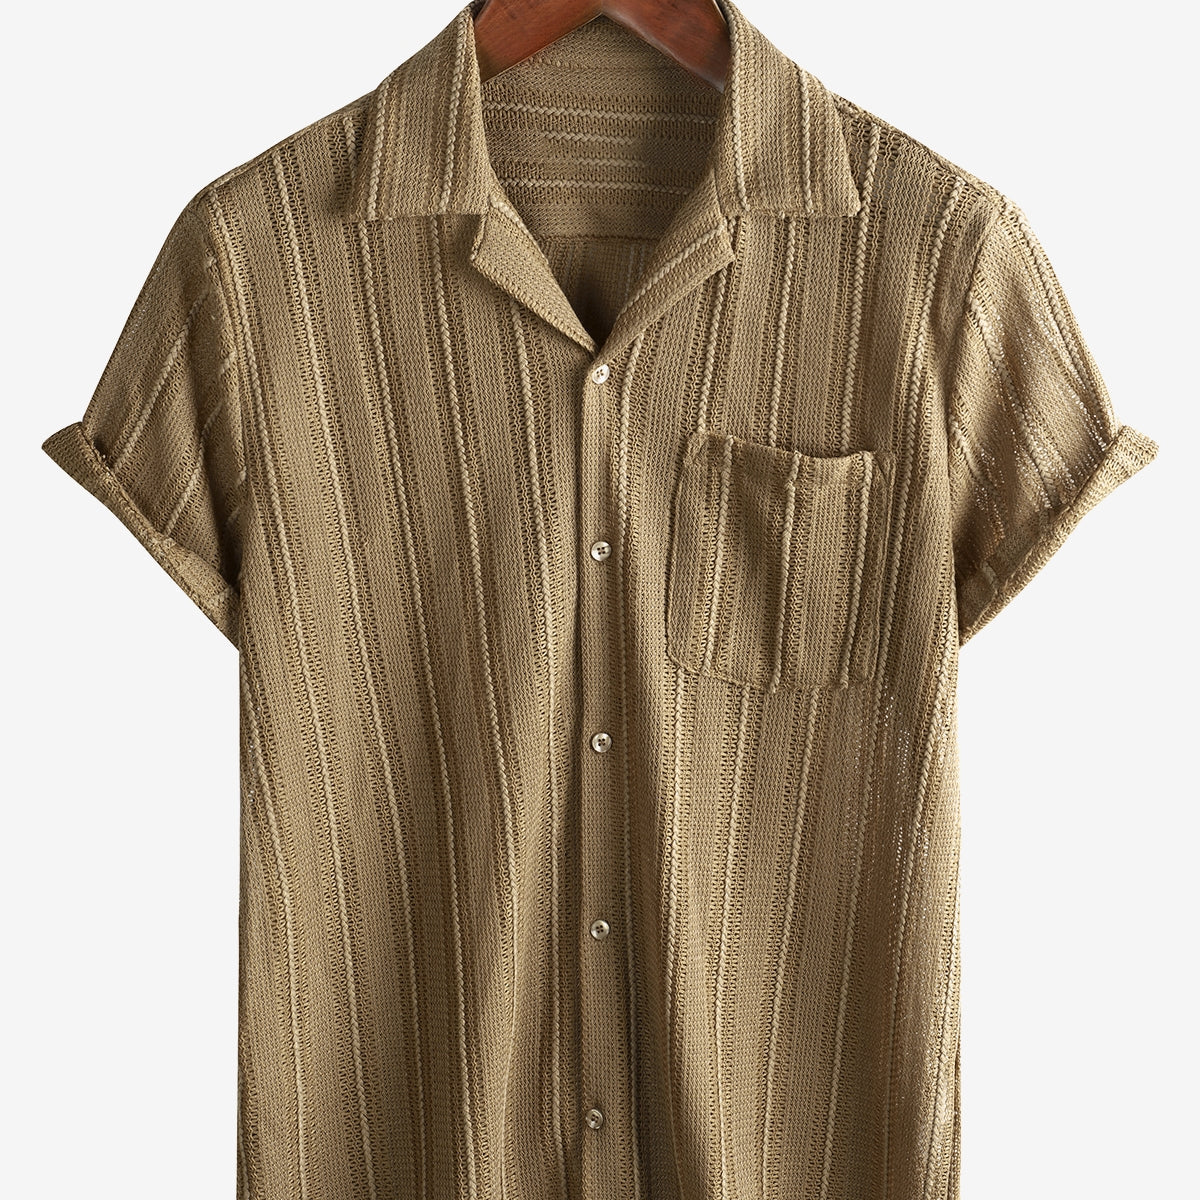 Men's Summer Lace Short Sleeve Casual Button Up Beach Shirt